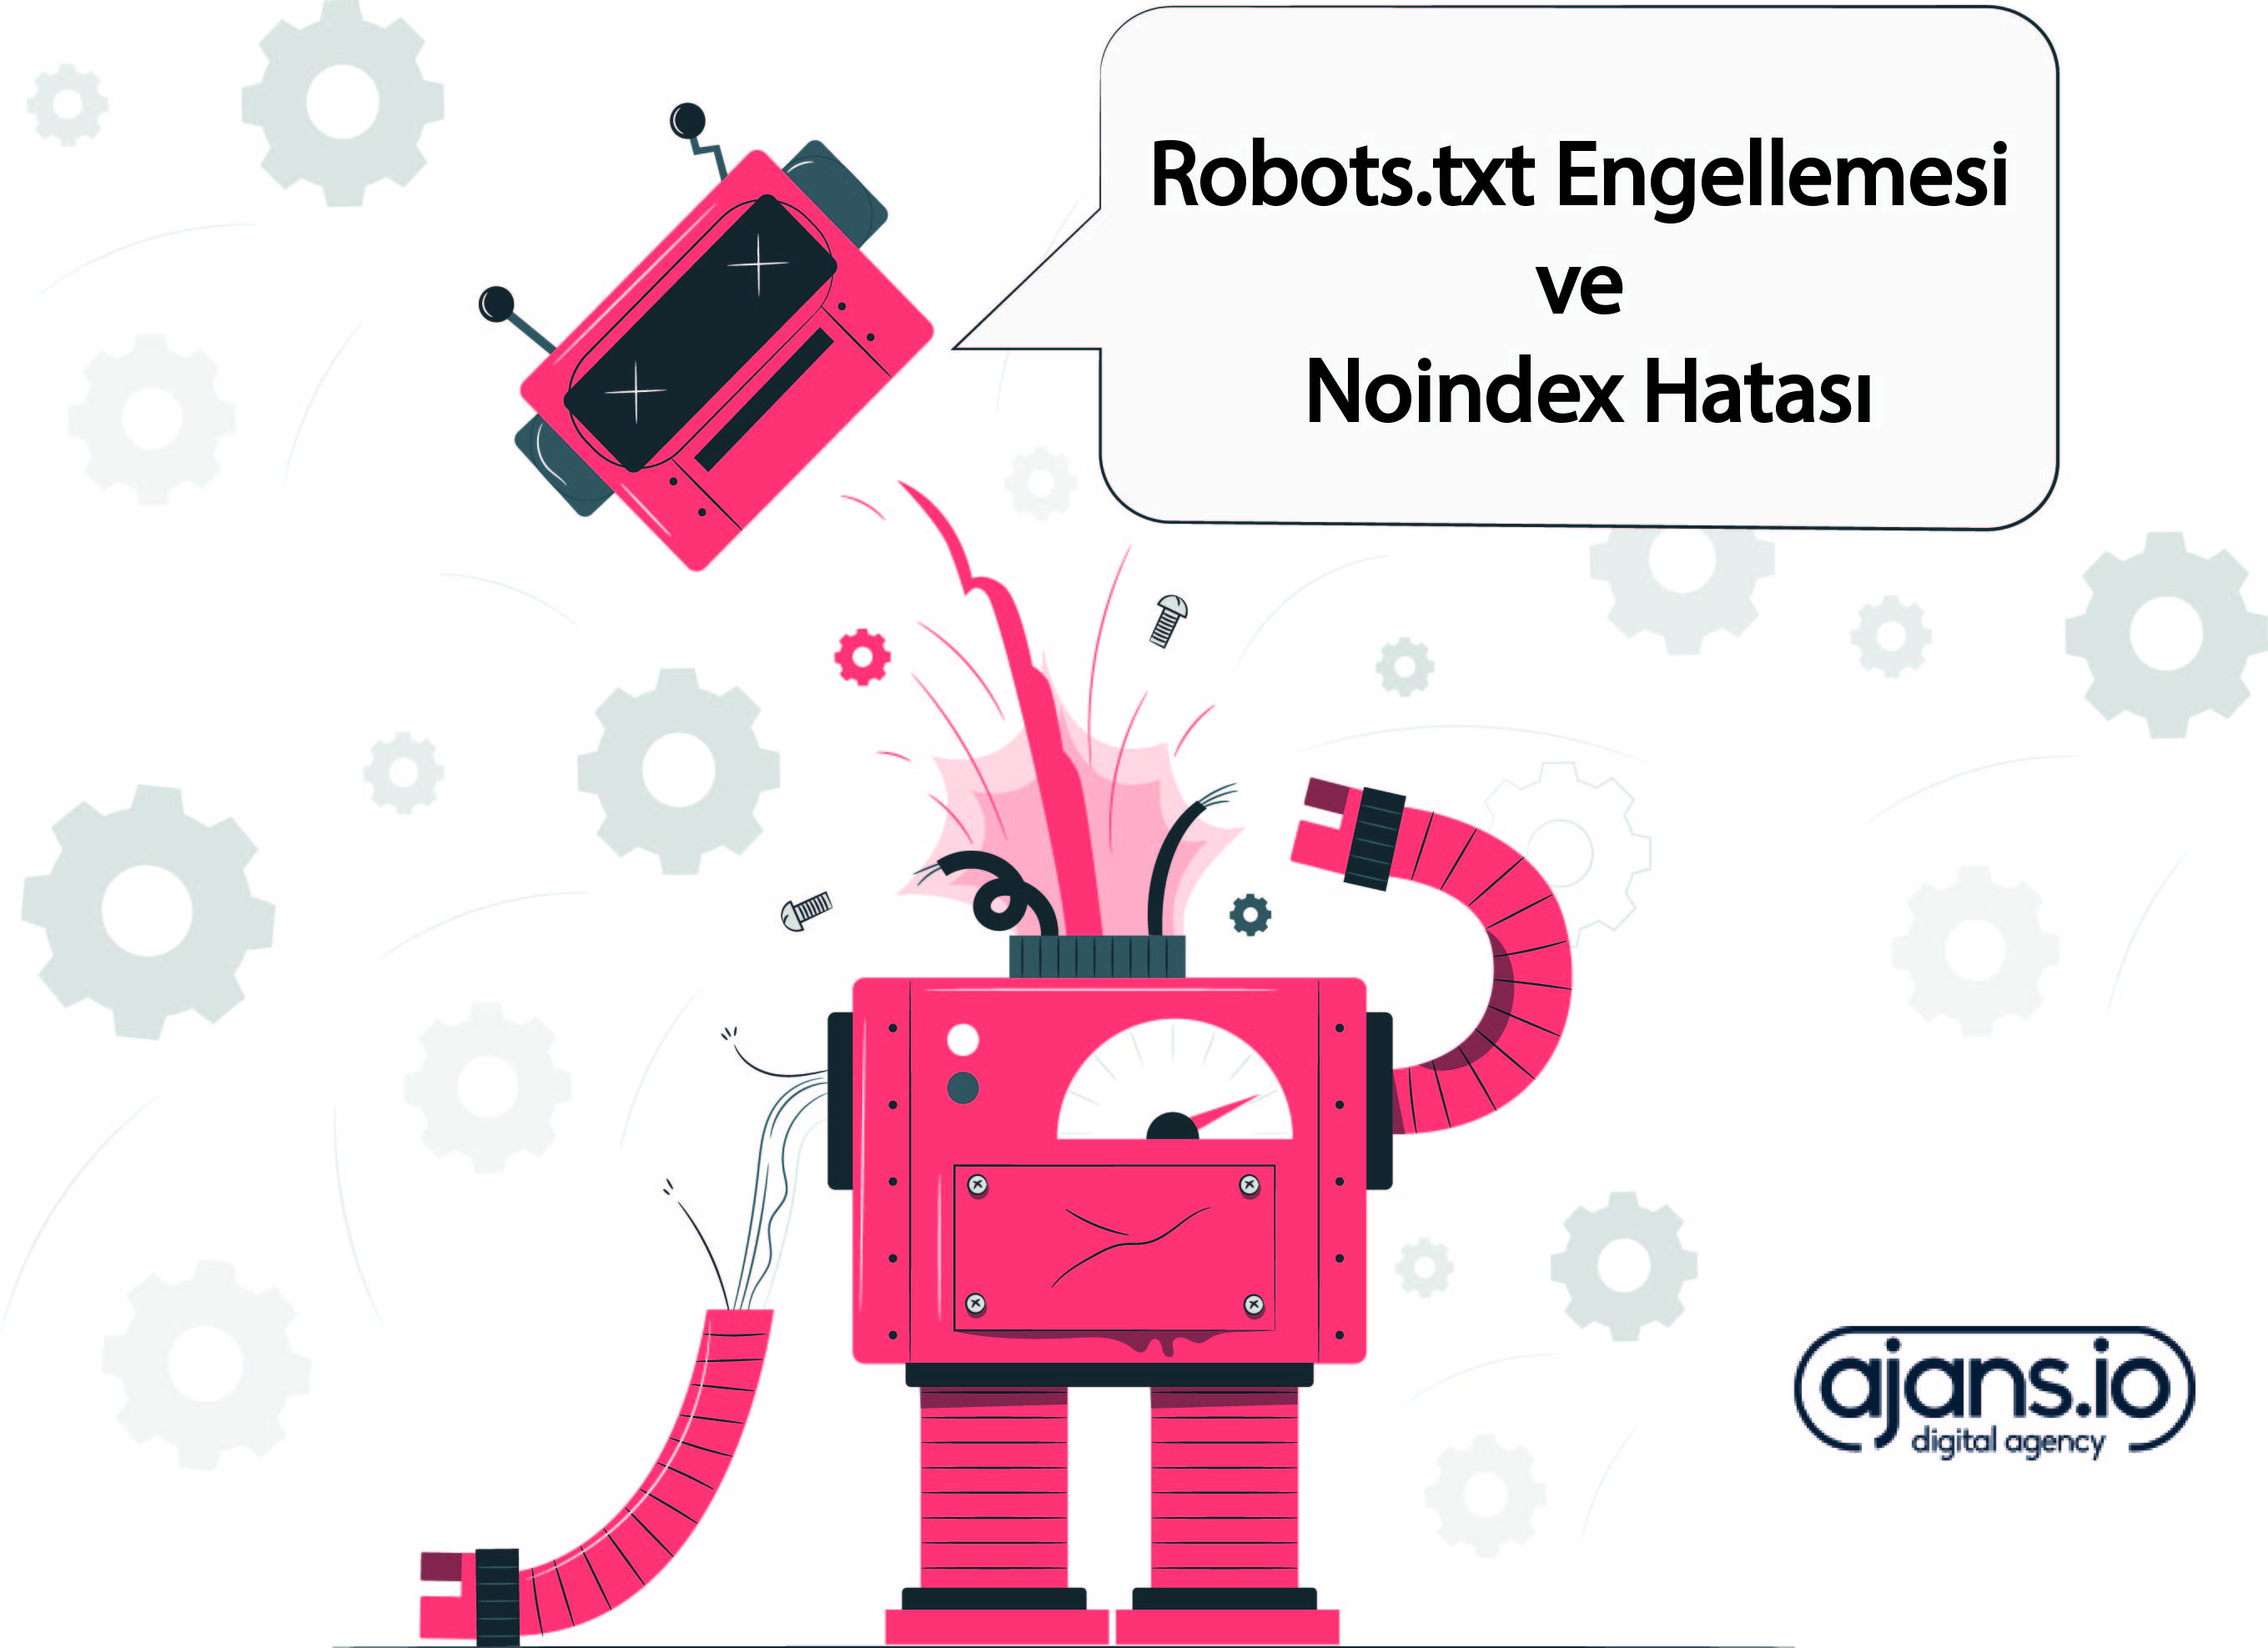 Robots.txt Engellemesi ve Noindex Hatası